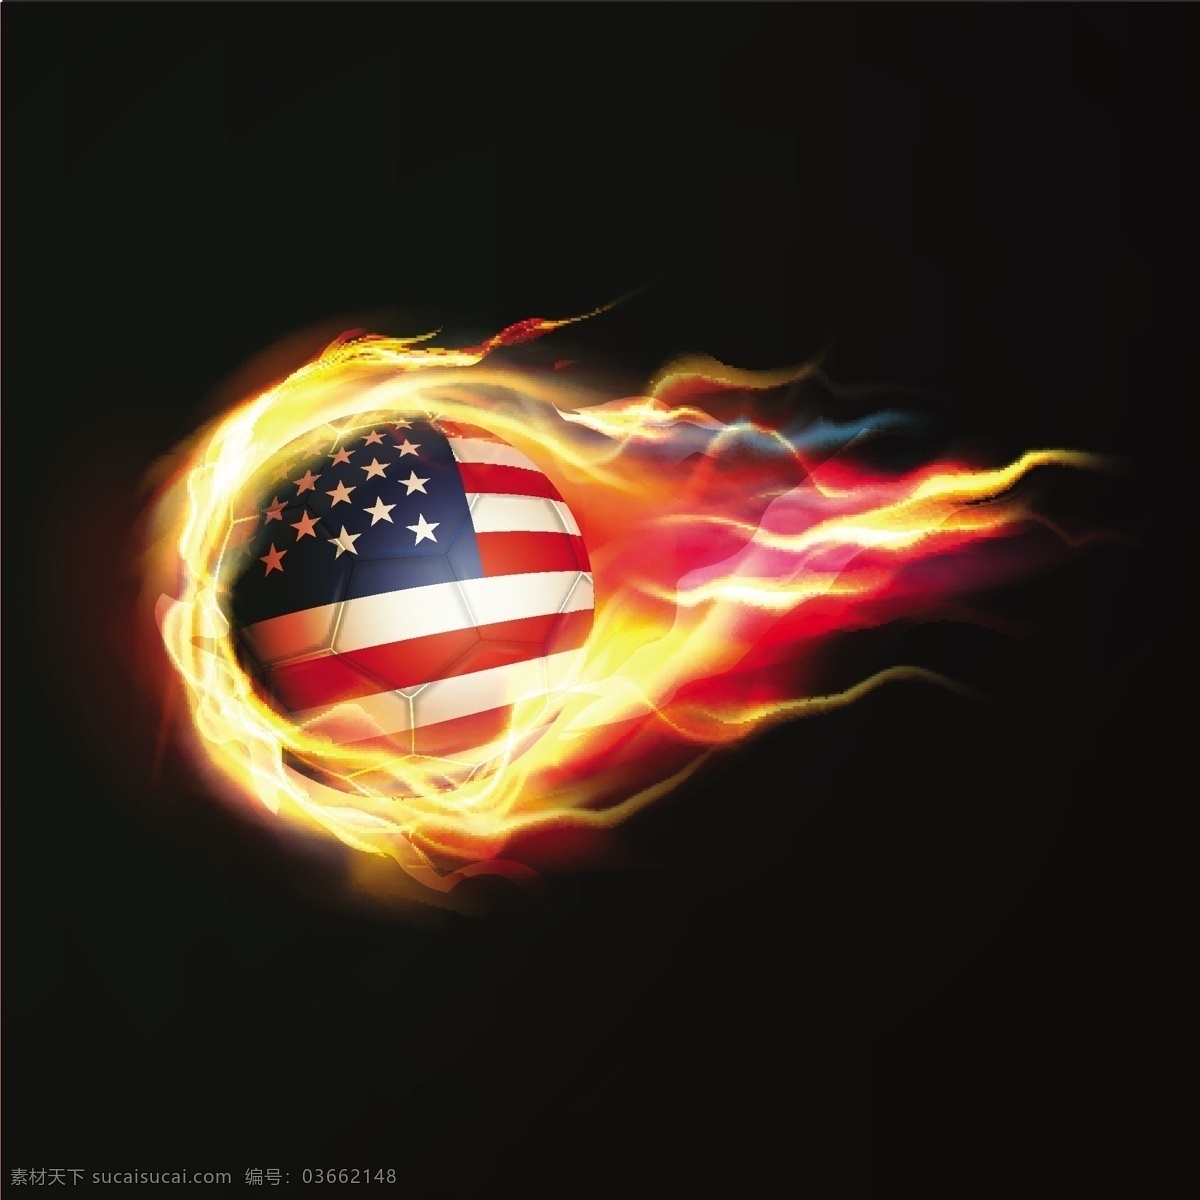 火焰fire 美国国旗 火焰 大火 烈火 烈焰 燃烧 fire 熊熊大火 火苗 卡通设计